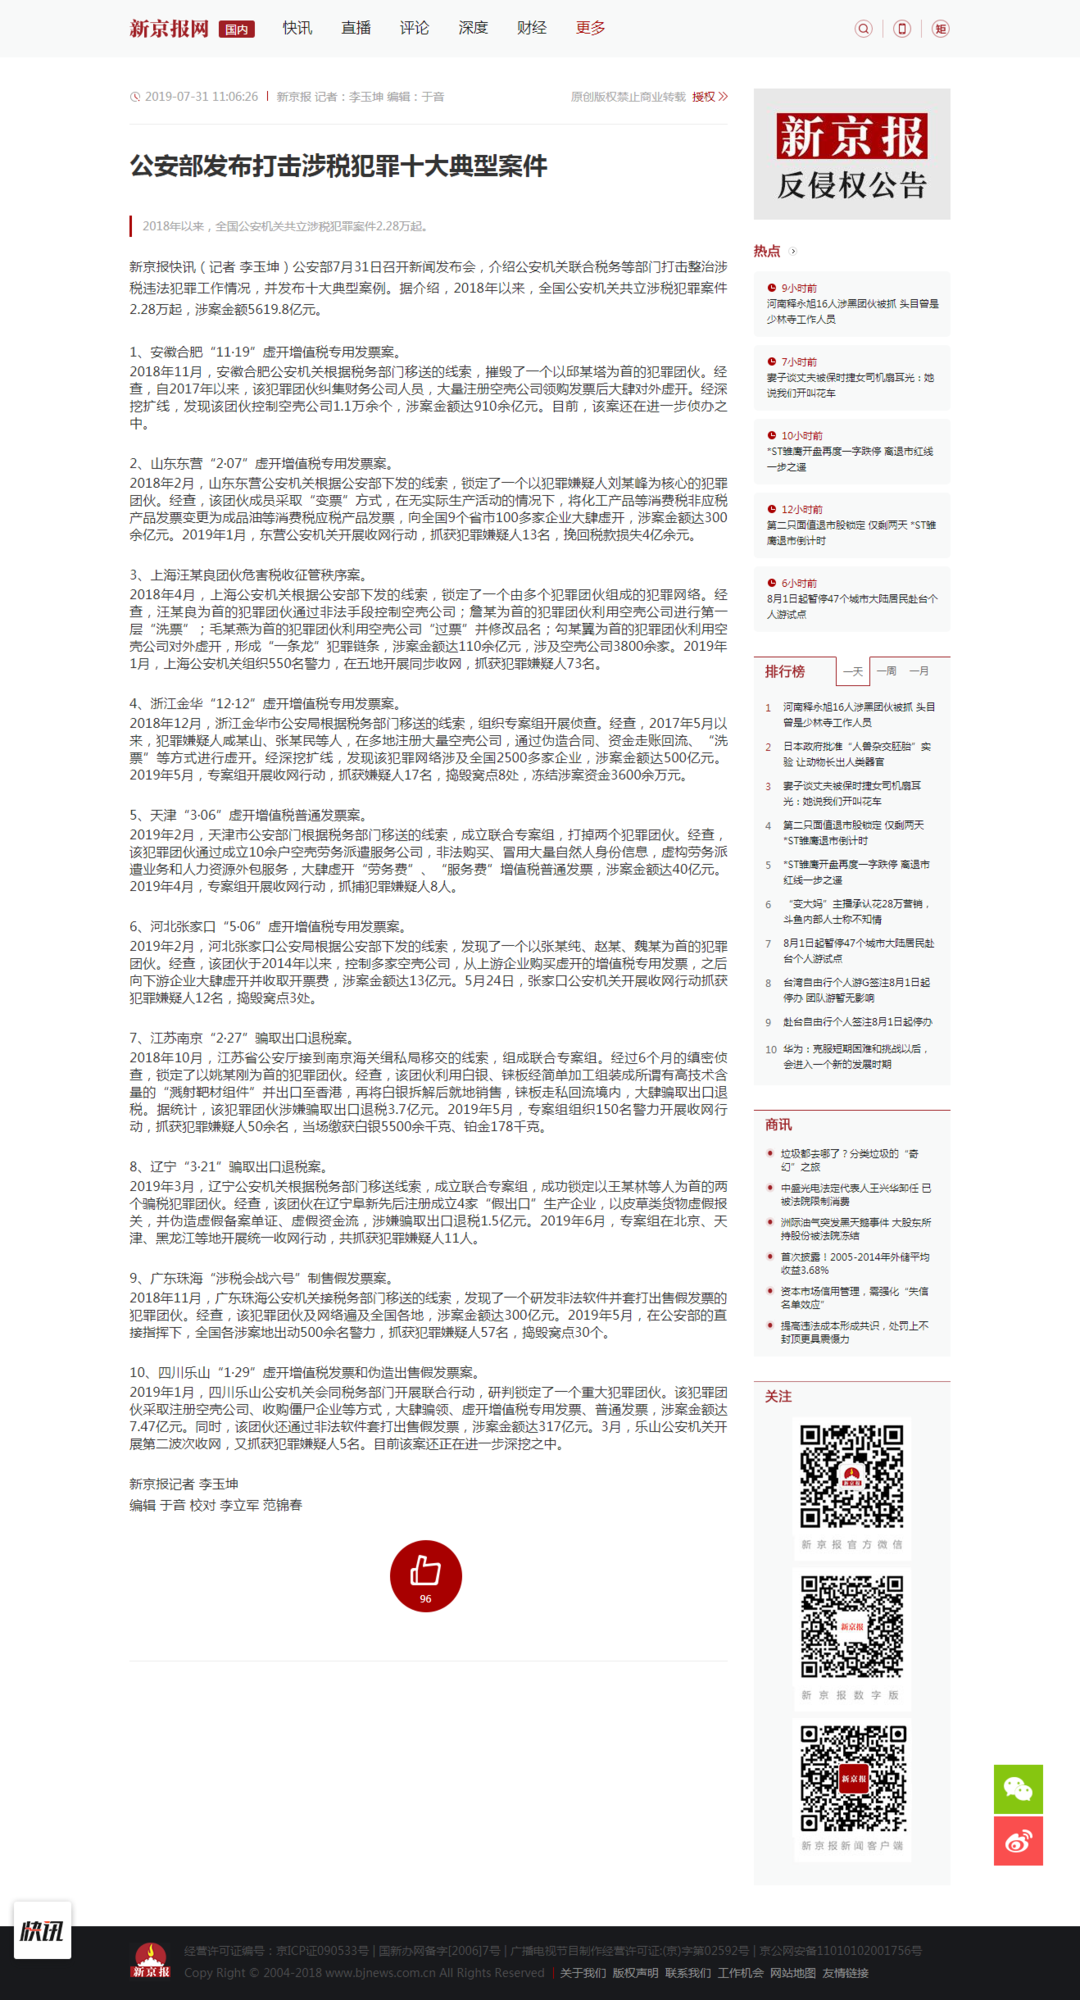 公安部发布打击涉税犯罪十大典型案件 - 国内 - 新京报网.png